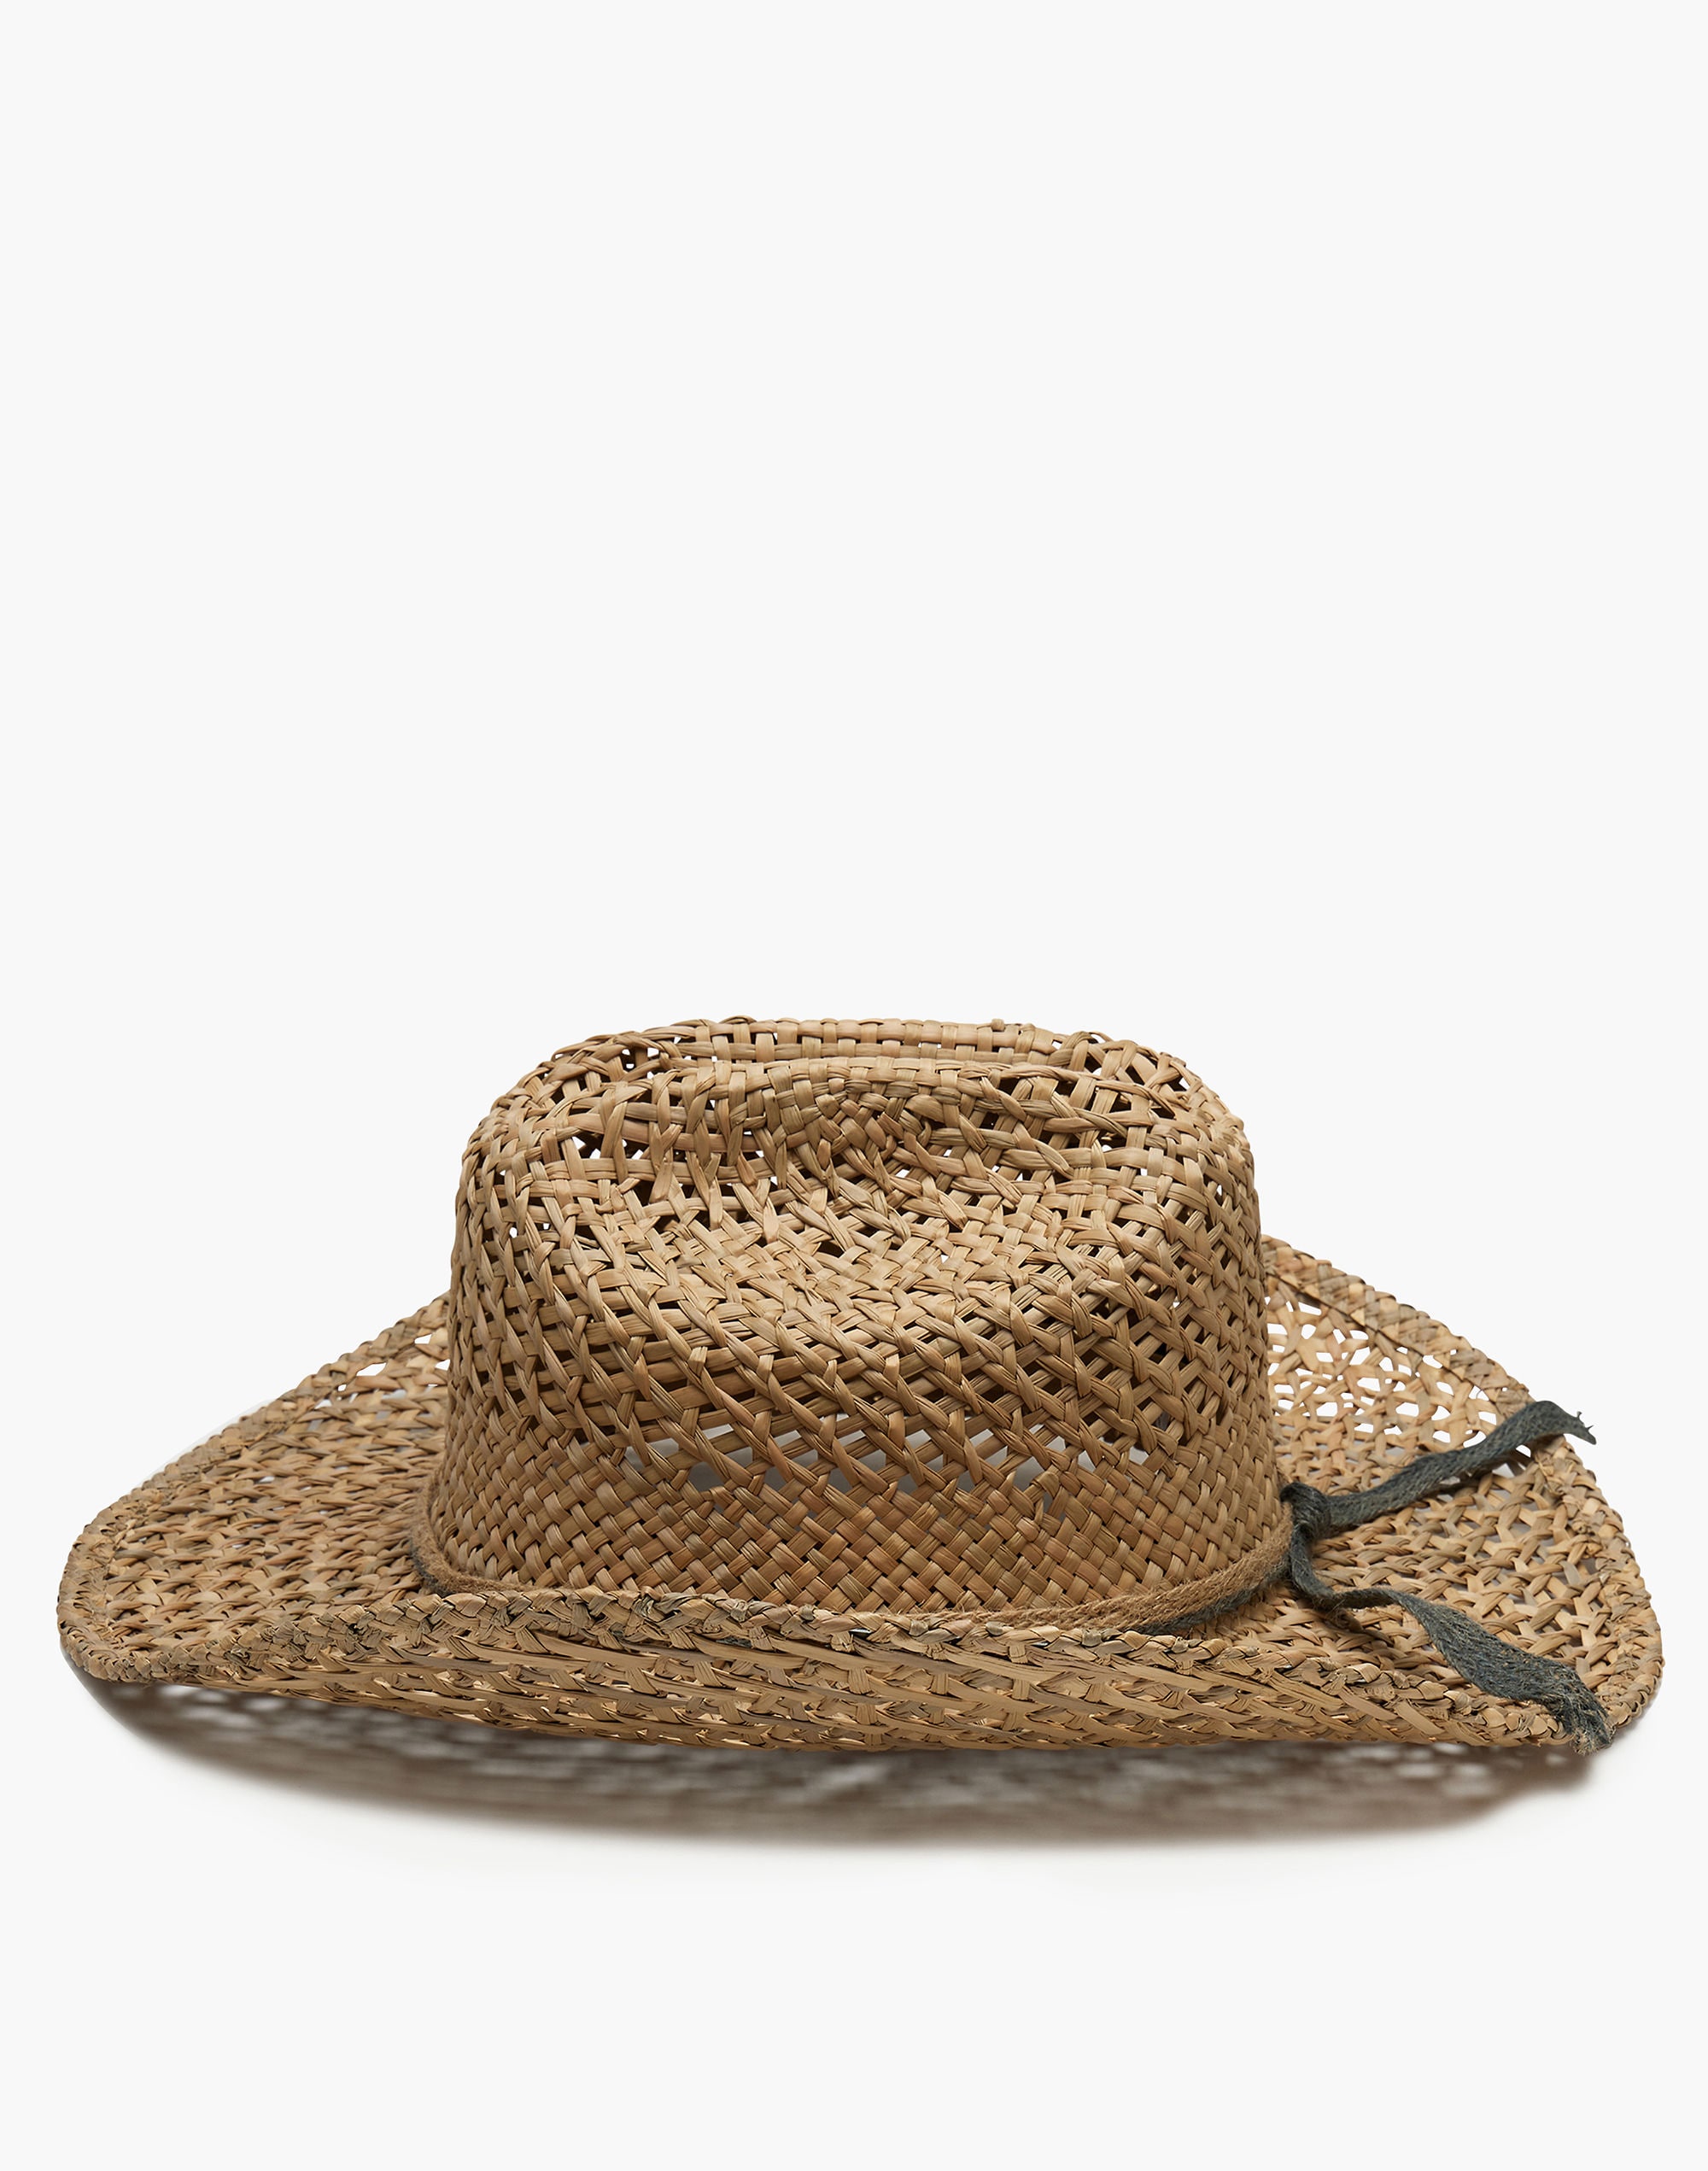 Wyeth Jessica Straw Hat